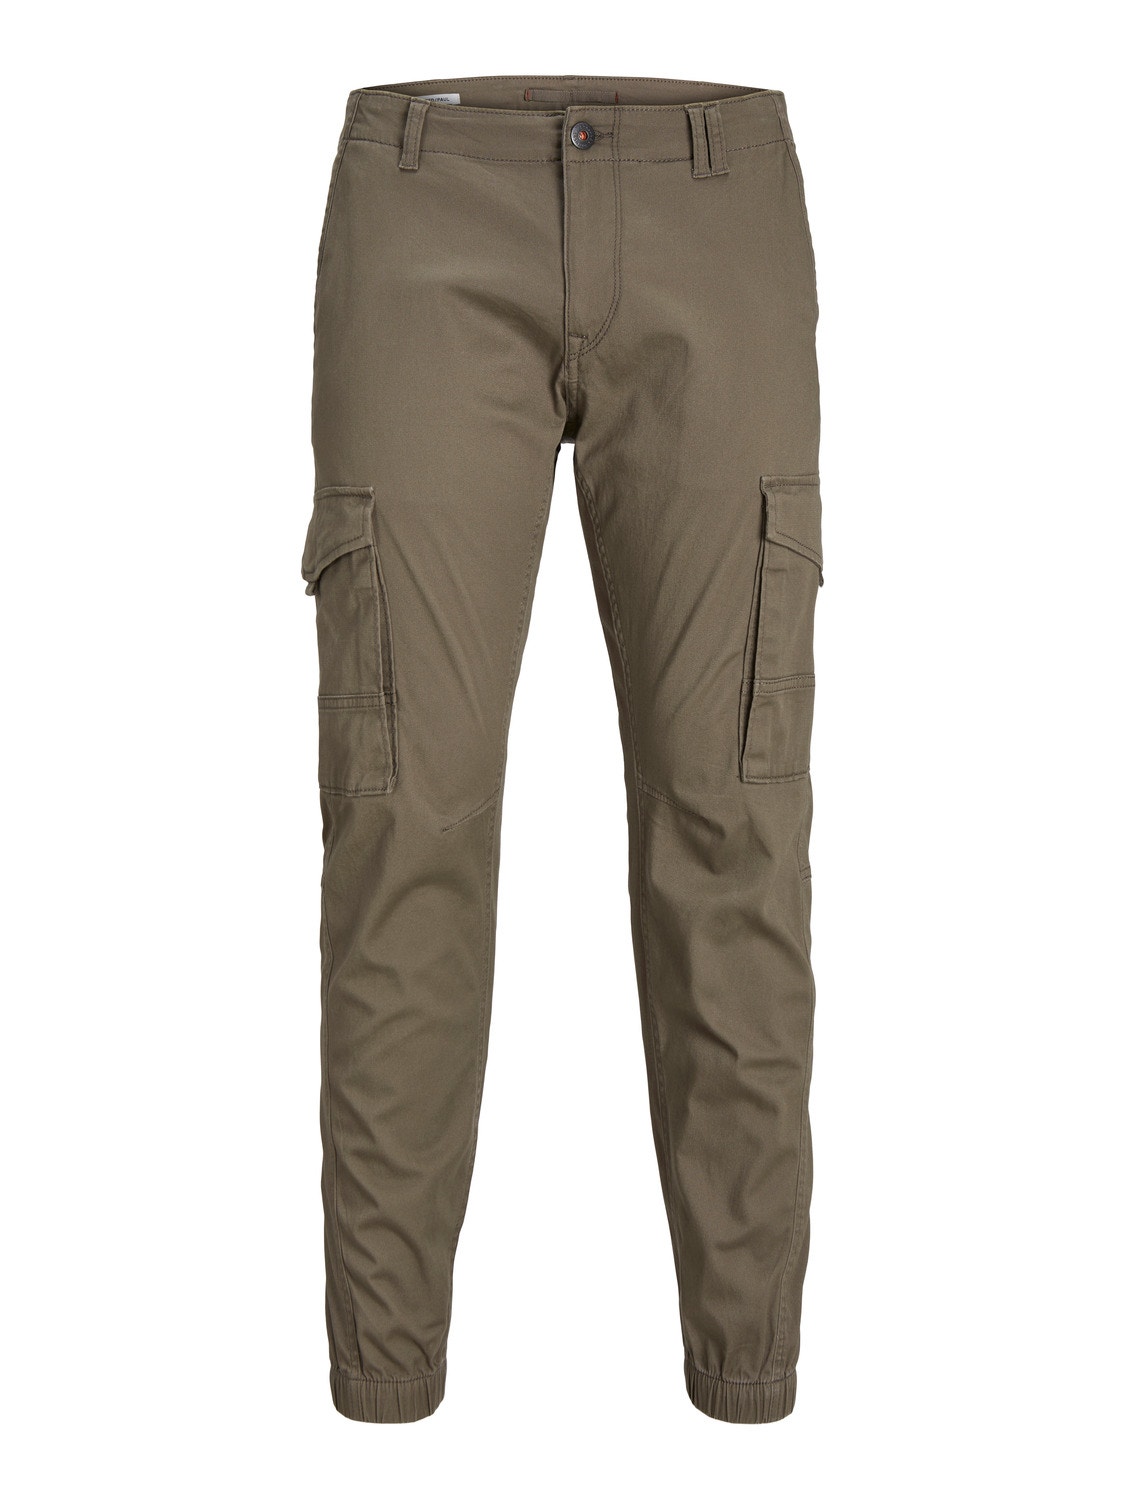 Jack & Jones Slim Fit Spodnie bojówki -Bungee Cord - 12139912